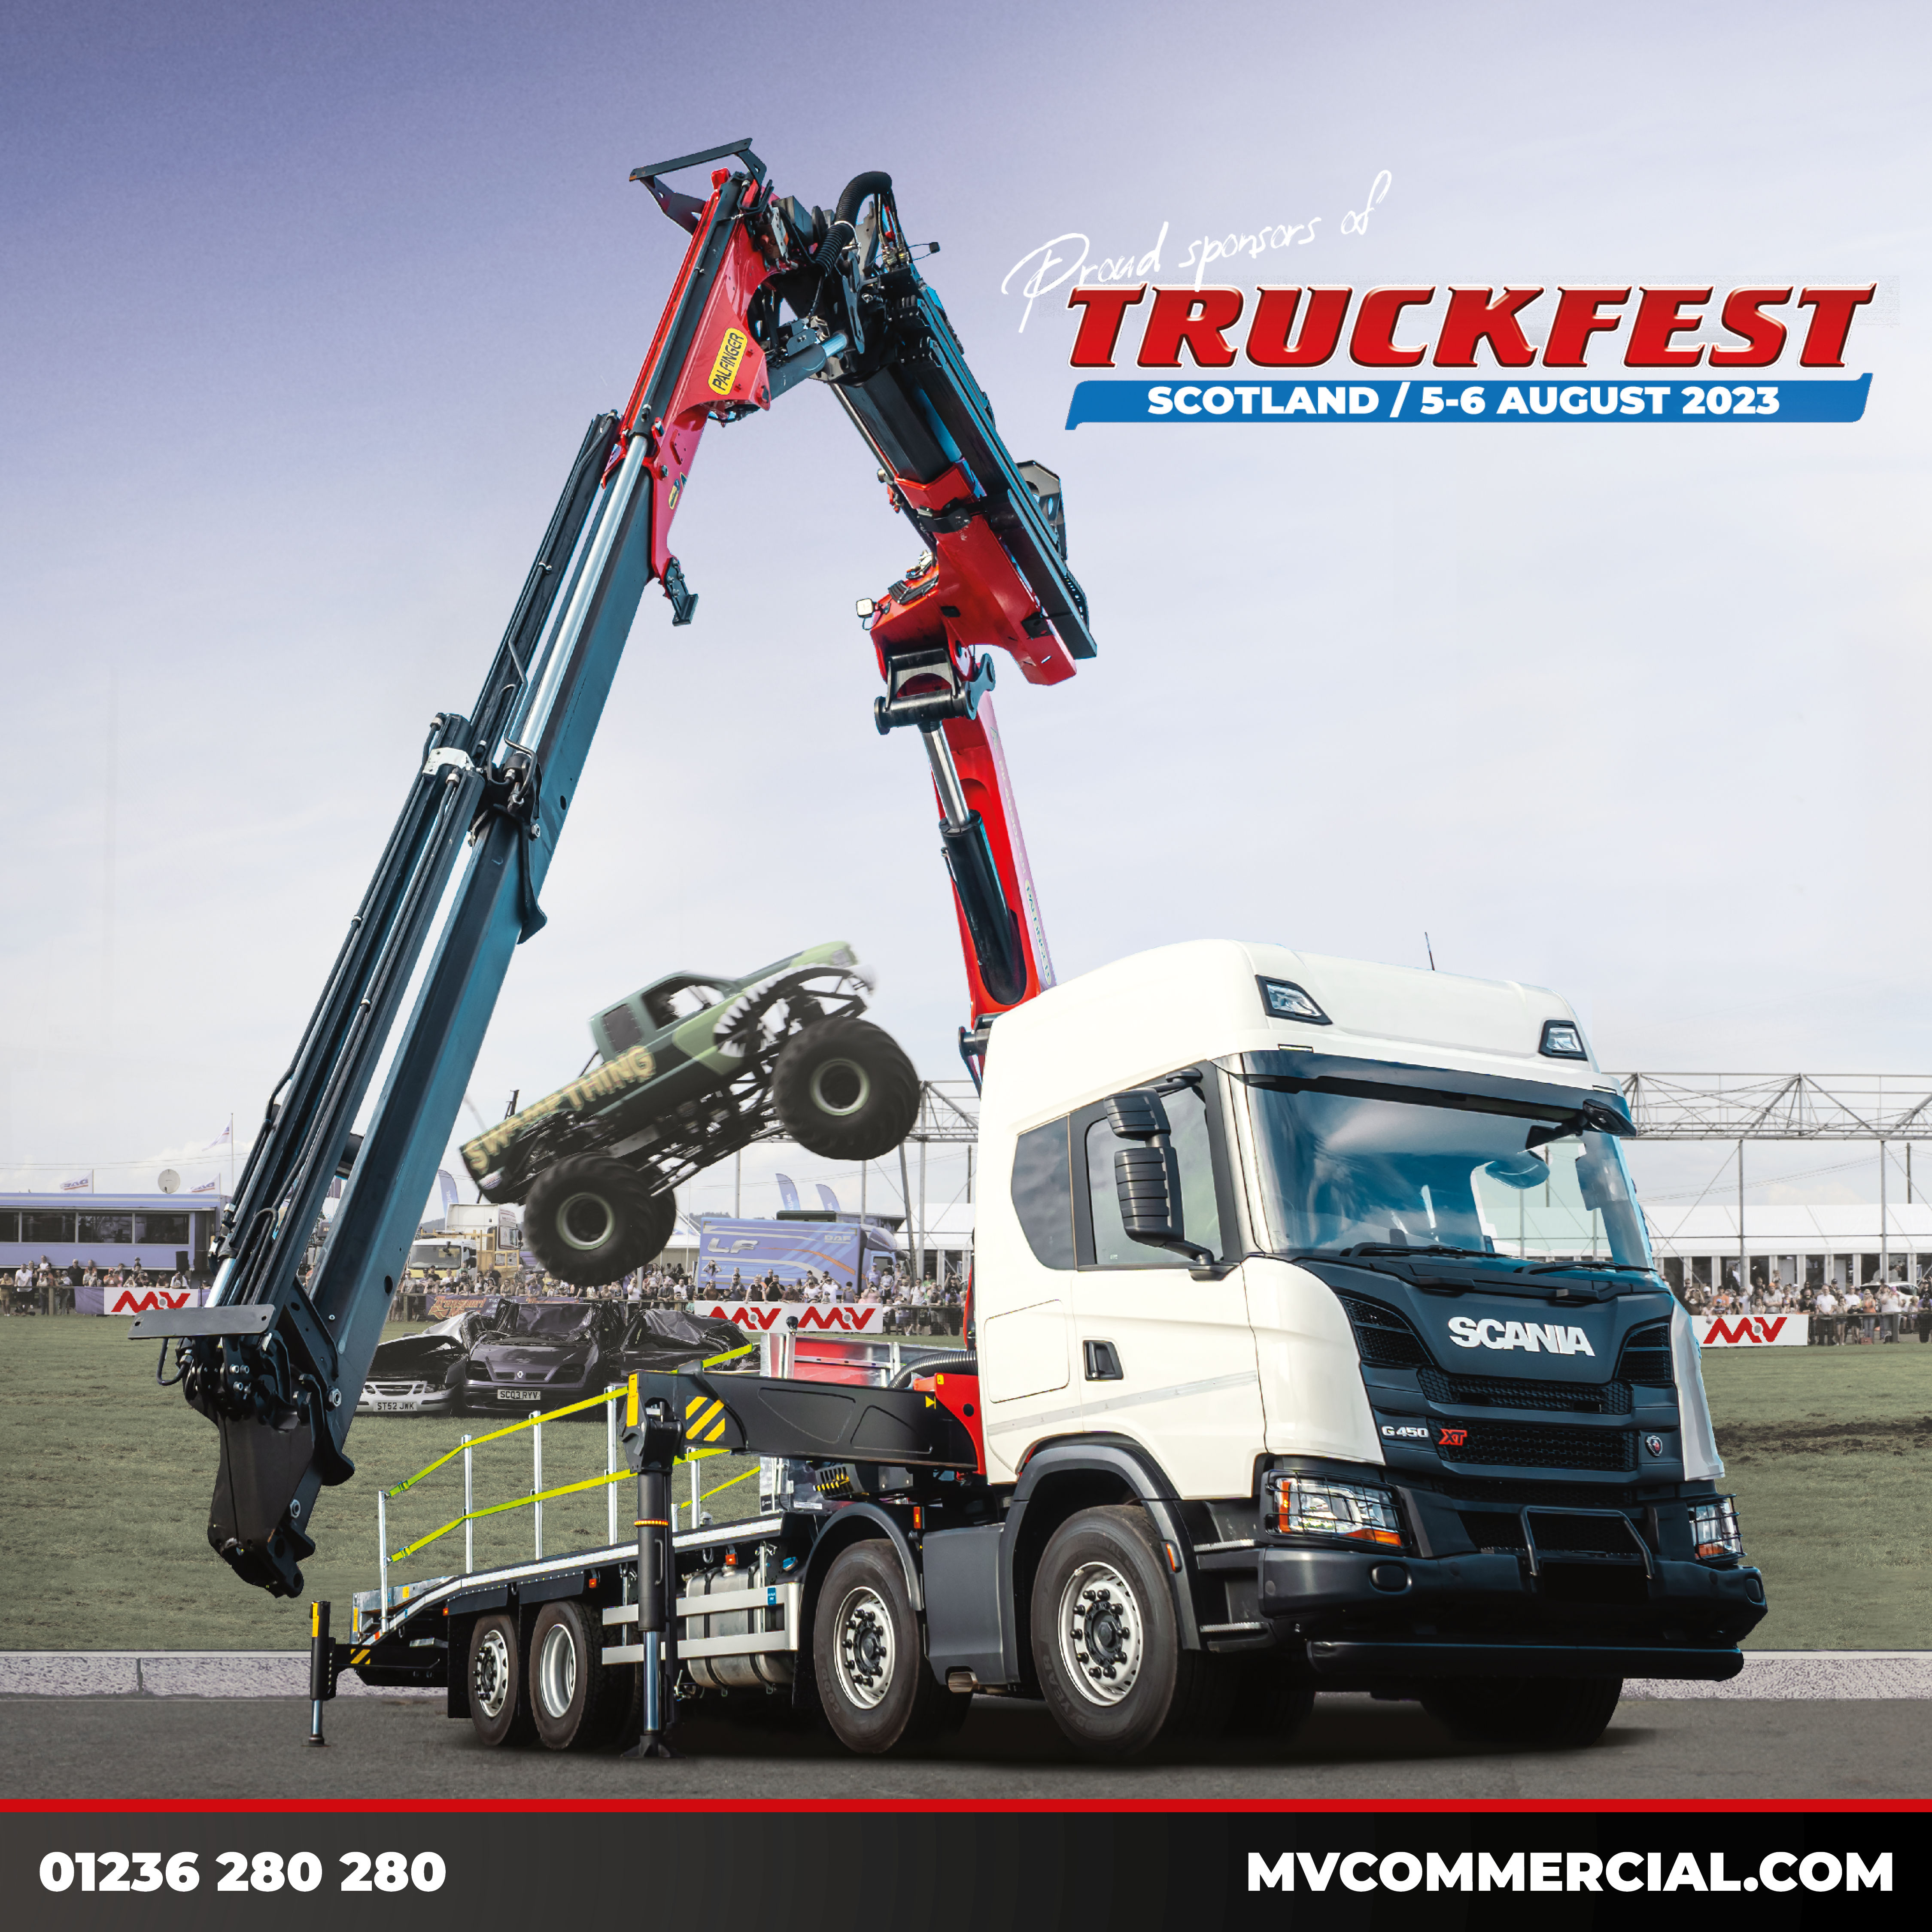 Image for PR | MV Commercial Returns as Headline Sponsor for Truckfest Scotland for 2023